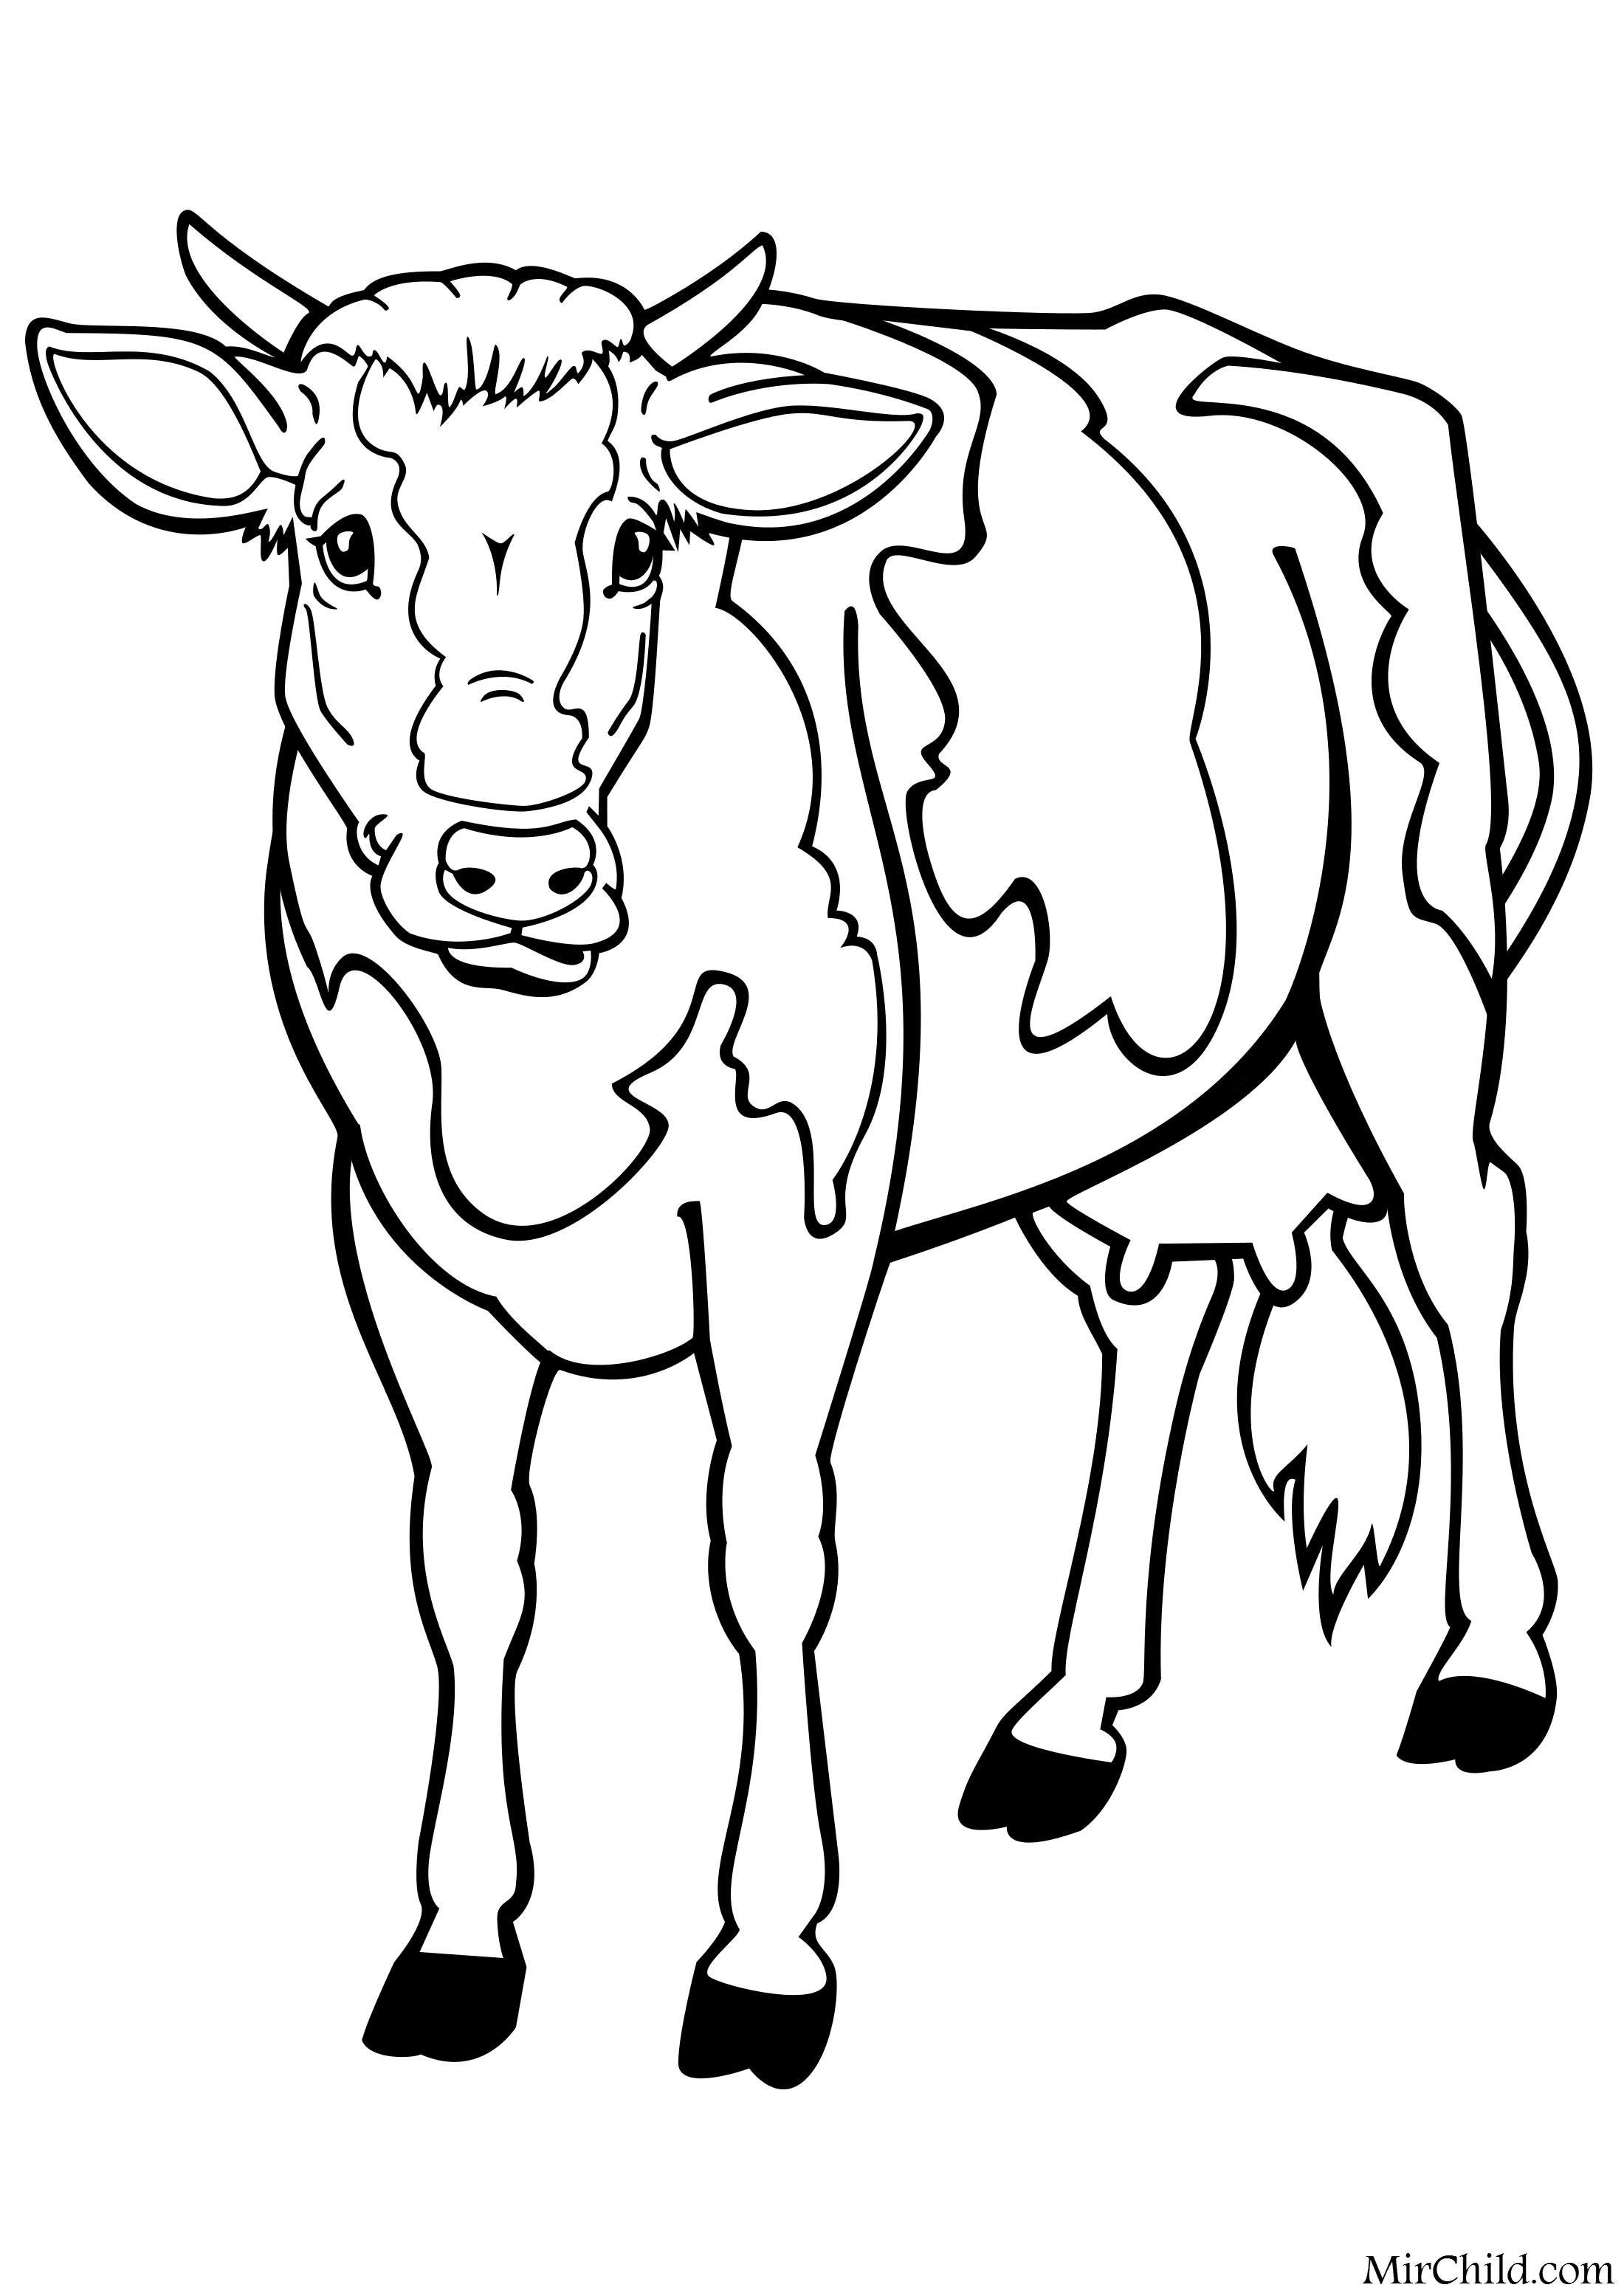 Распечатать коровку раскраску. Раскраска корова. Корова раскраска для детей. Корова картинка для детей раскраска. Корова раскраска для малышей.